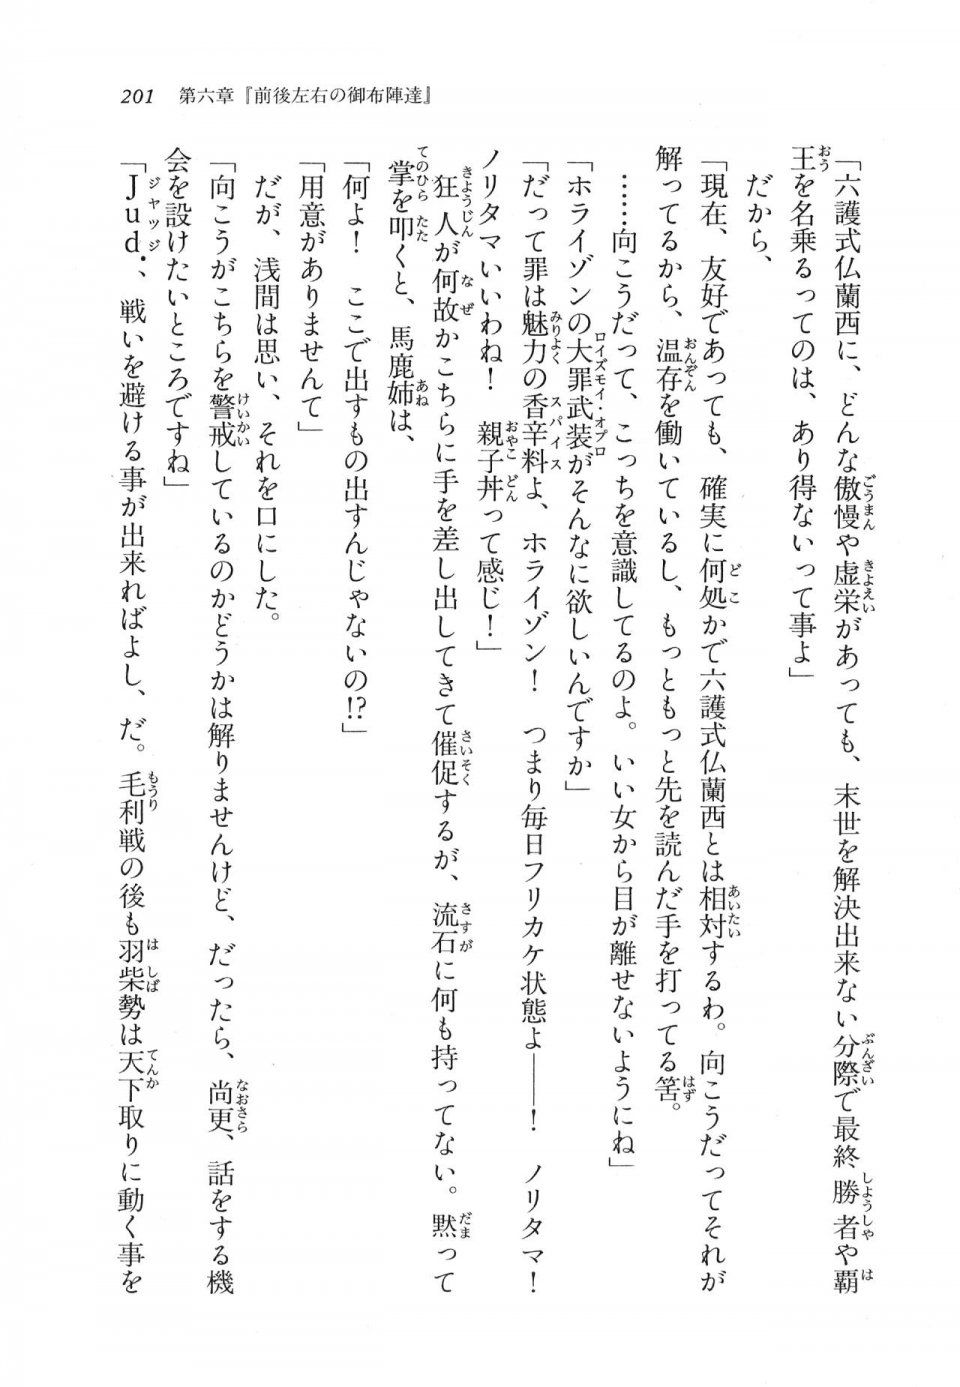 Kyoukai Senjou no Horizon LN Vol 11(5A) - Photo #201